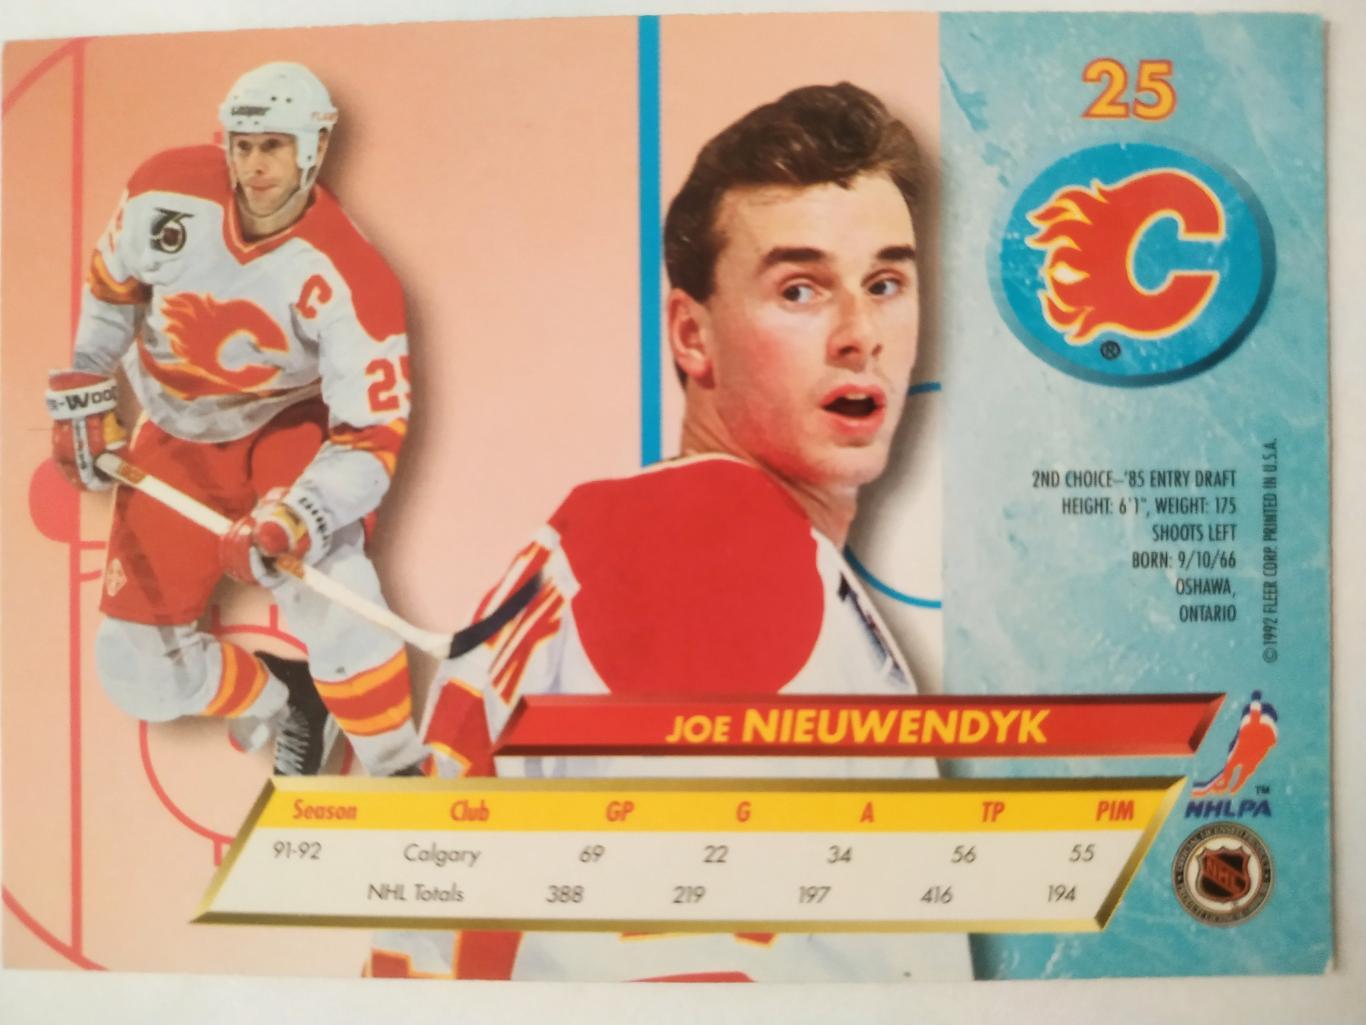 ХОККЕЙ КАРТОЧКА НХЛ FLEER ULTRA 1992-93 NHL JOE NIEUWENDYK CALGARY FLAMES #25 1